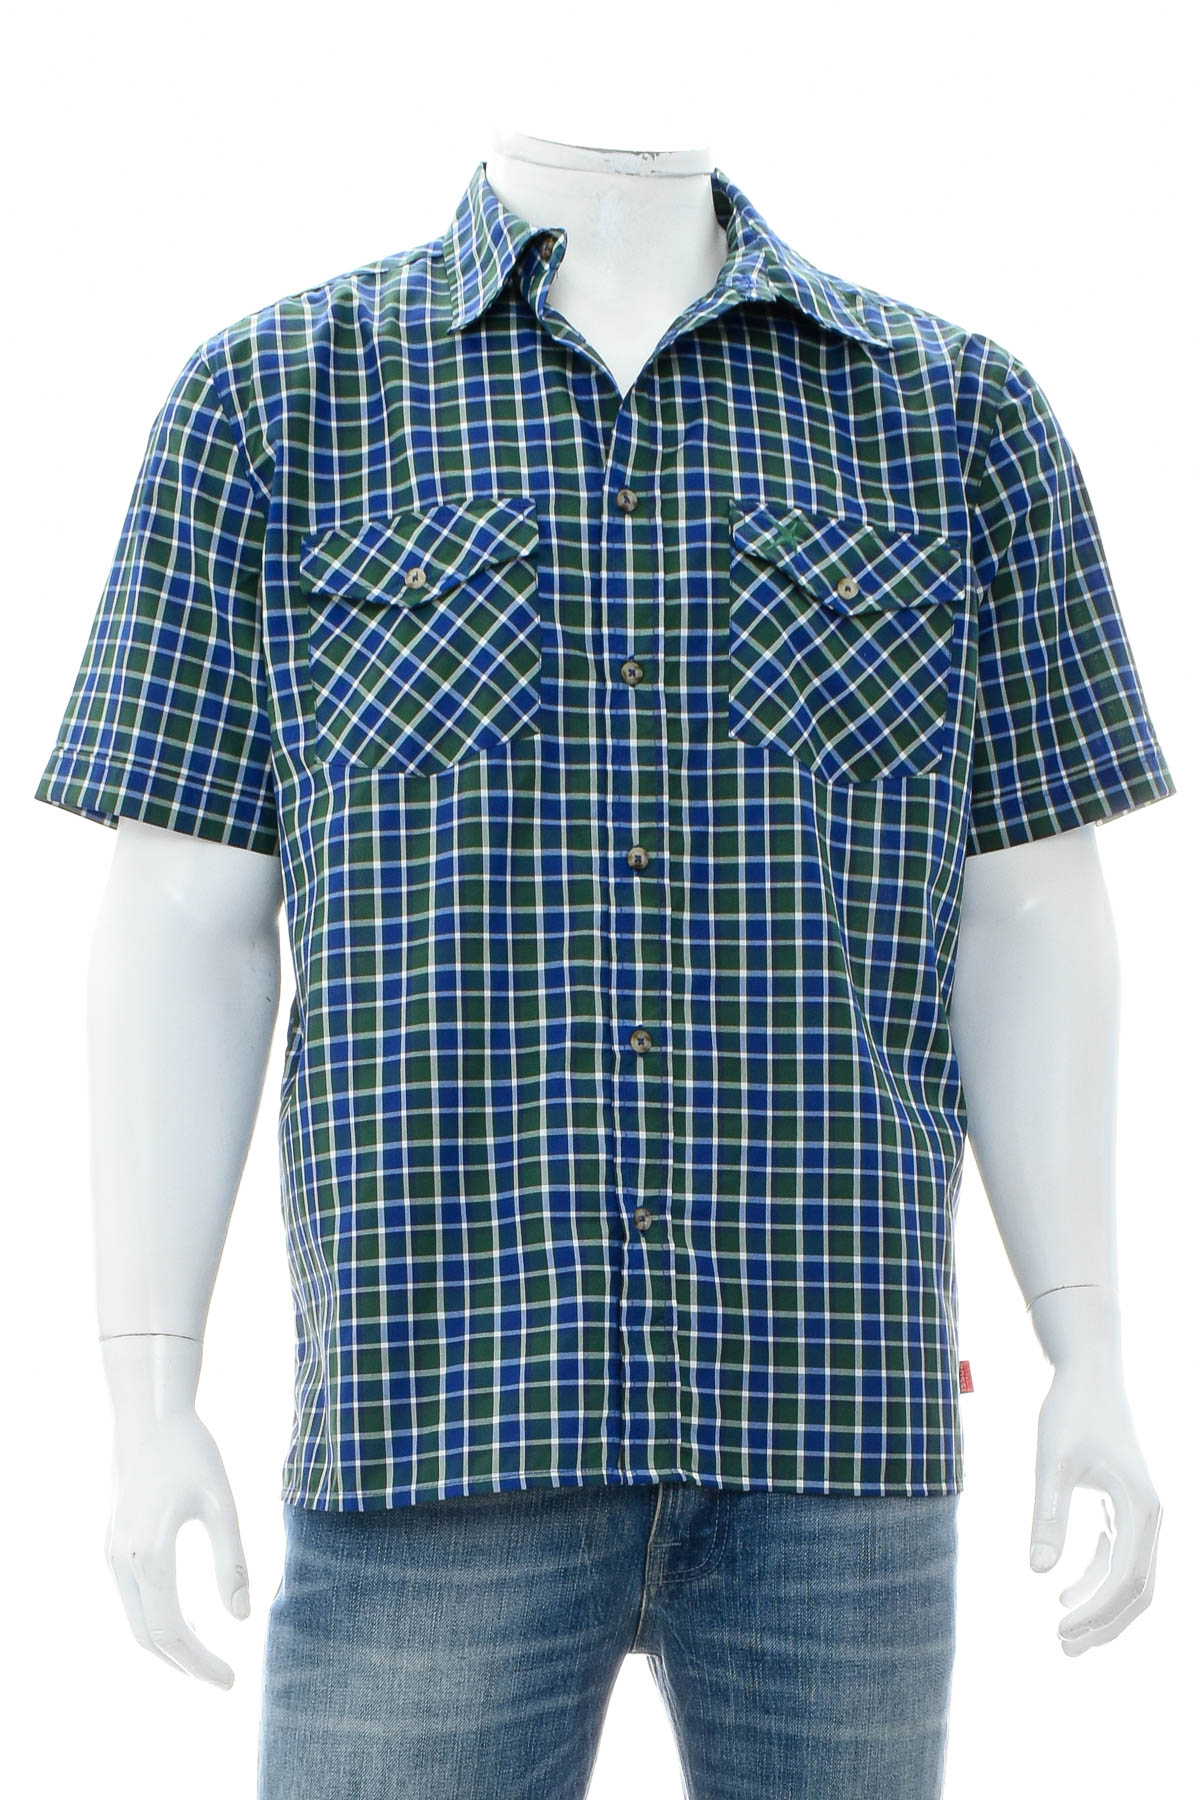 Ανδρικό πουκάμισο - Vittorio Rossi - 0